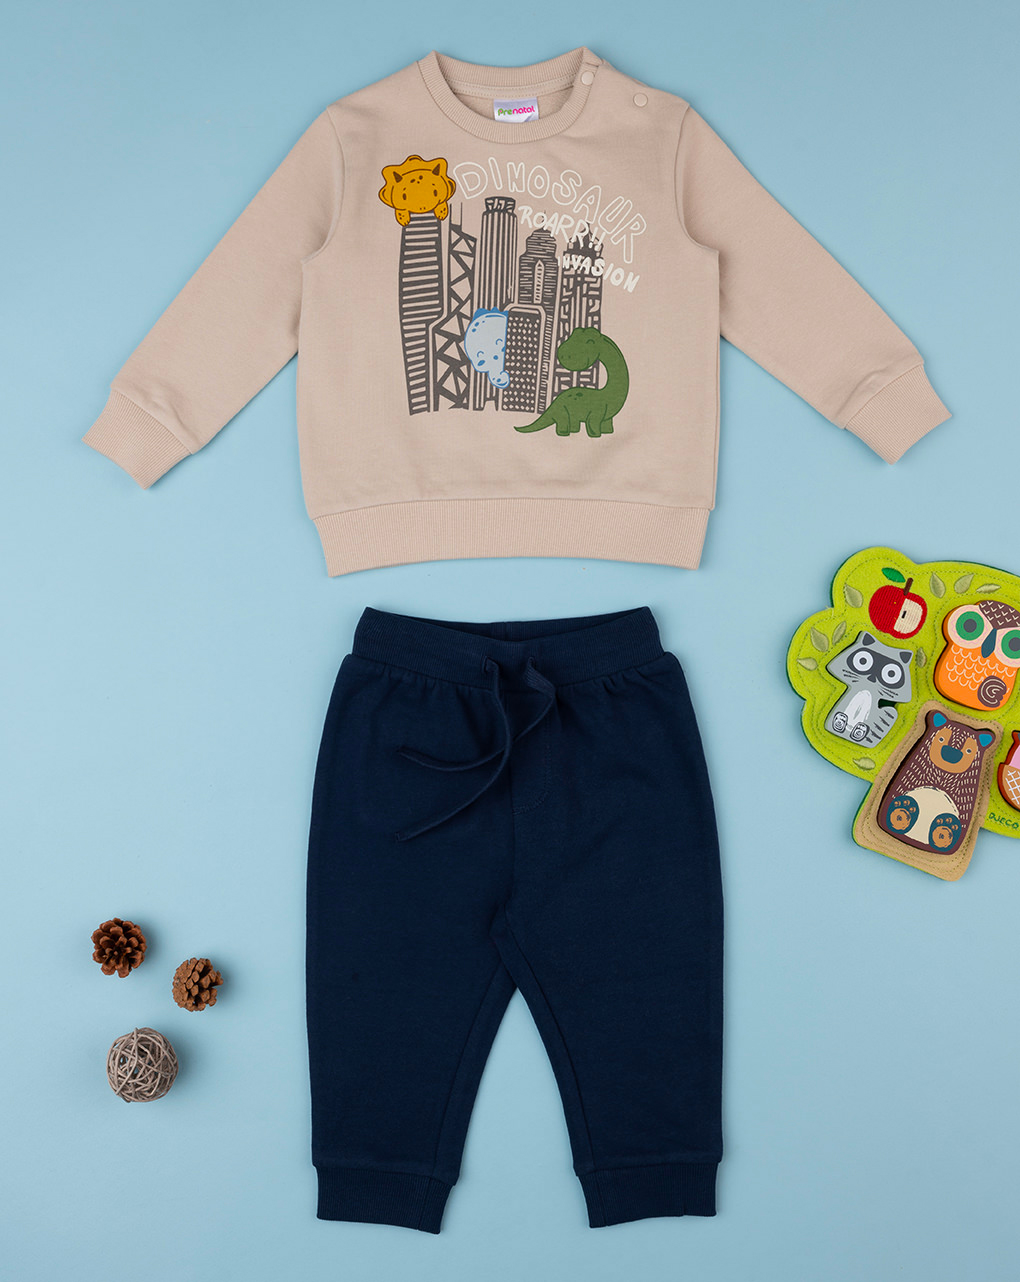 βρεφικό σετ μπλούζα φούτερ και φόρμα δεινόσαυροι για αγόρι